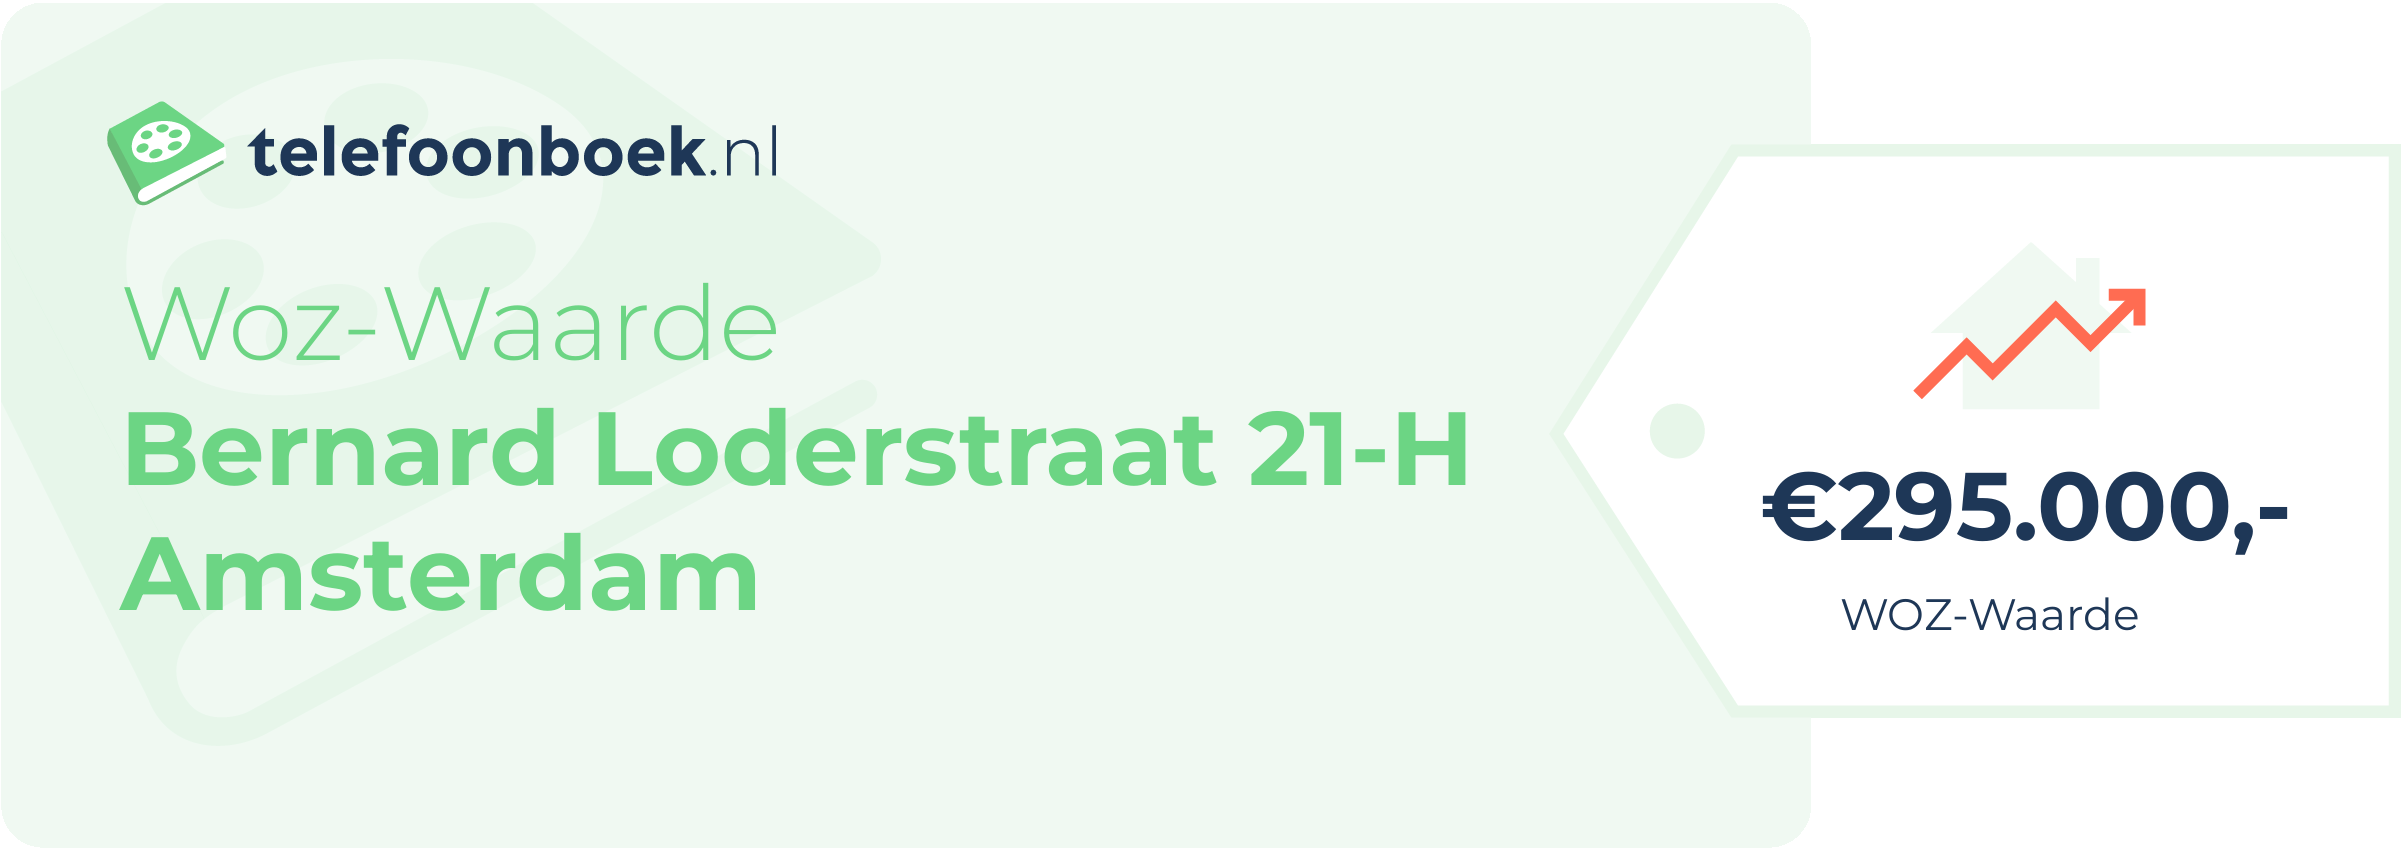 WOZ-waarde Bernard Loderstraat 21-H Amsterdam